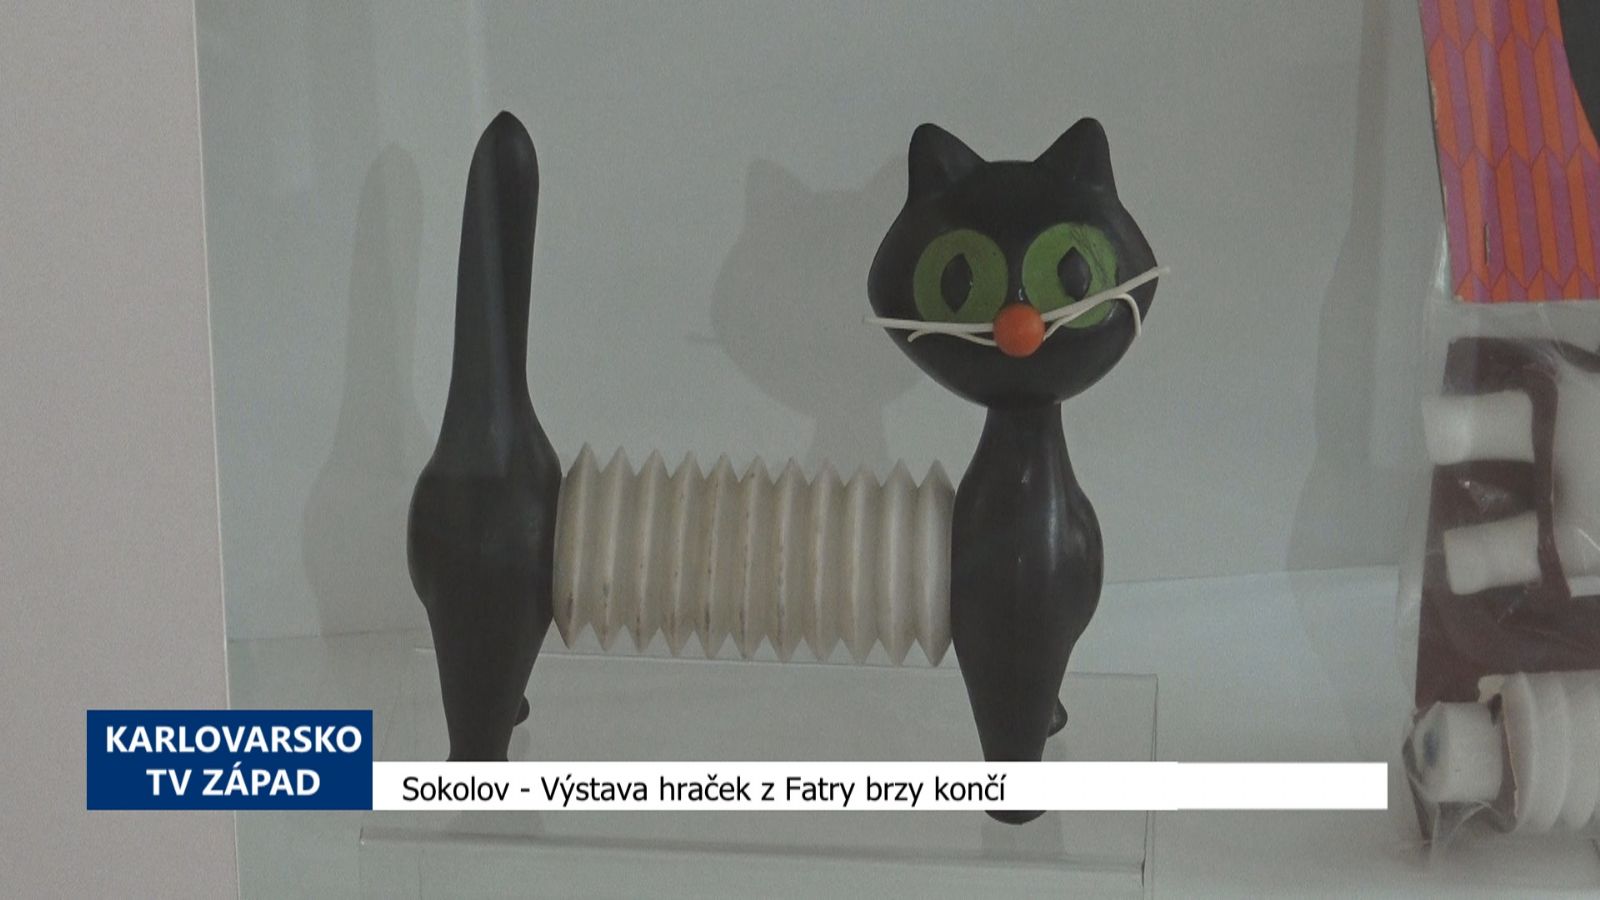 Sokolov: Výstava hraček z Fatry brzy končí (TV Západ)